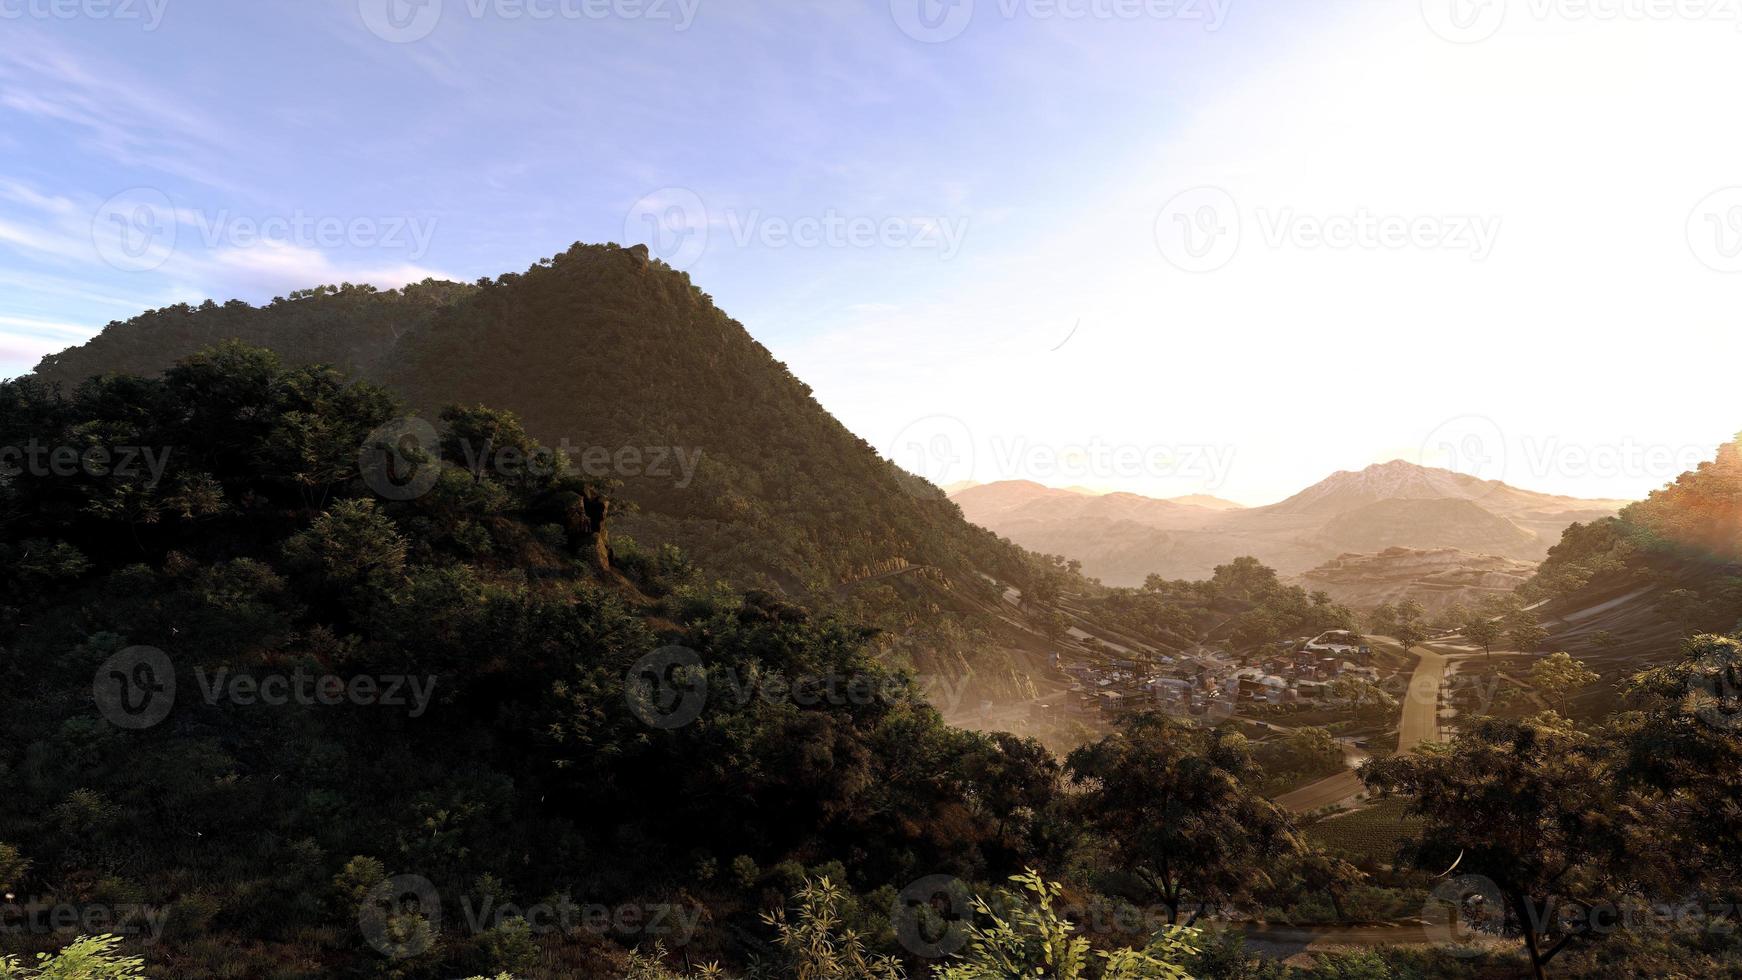 montagne grandi e alte dove la luce del sole proietta ombre di montagne tra natura, foreste e cittadine rurali rendering 3d. foto